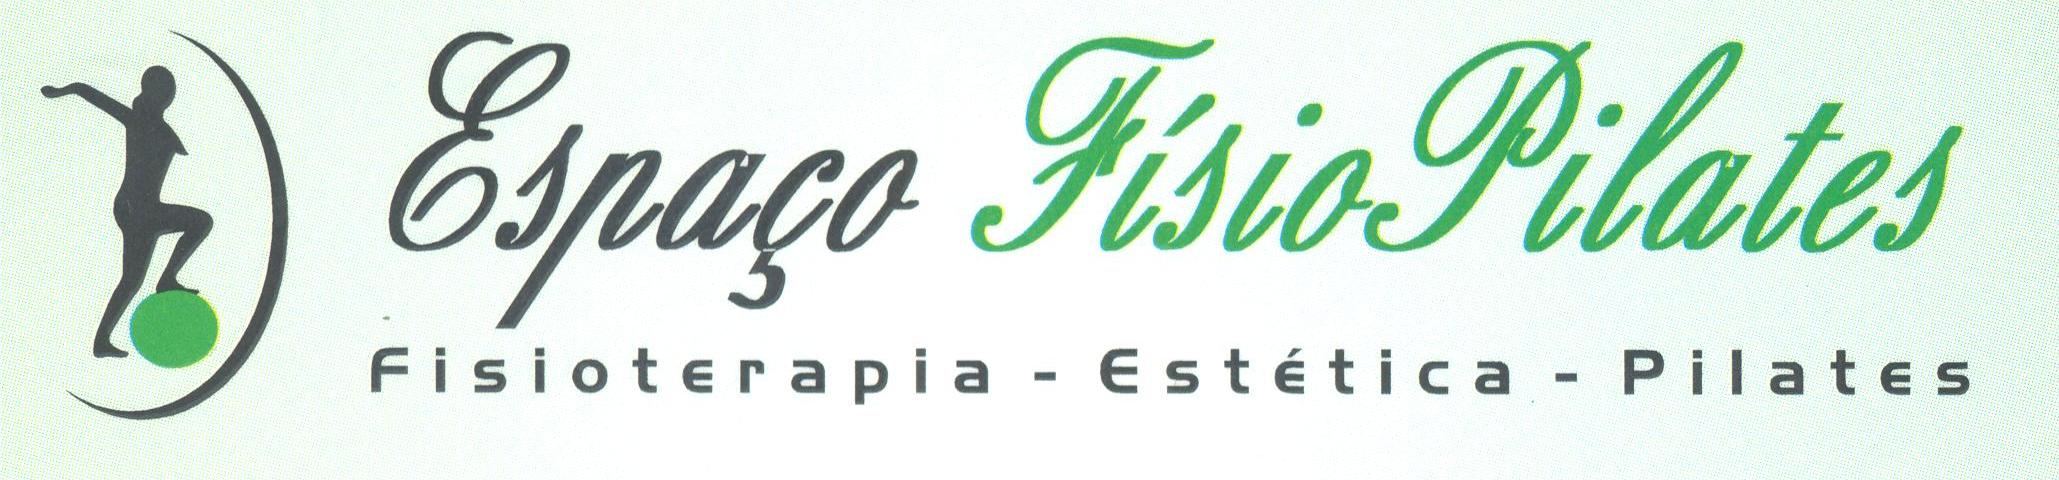 ESPACO FISIO PILATES logo